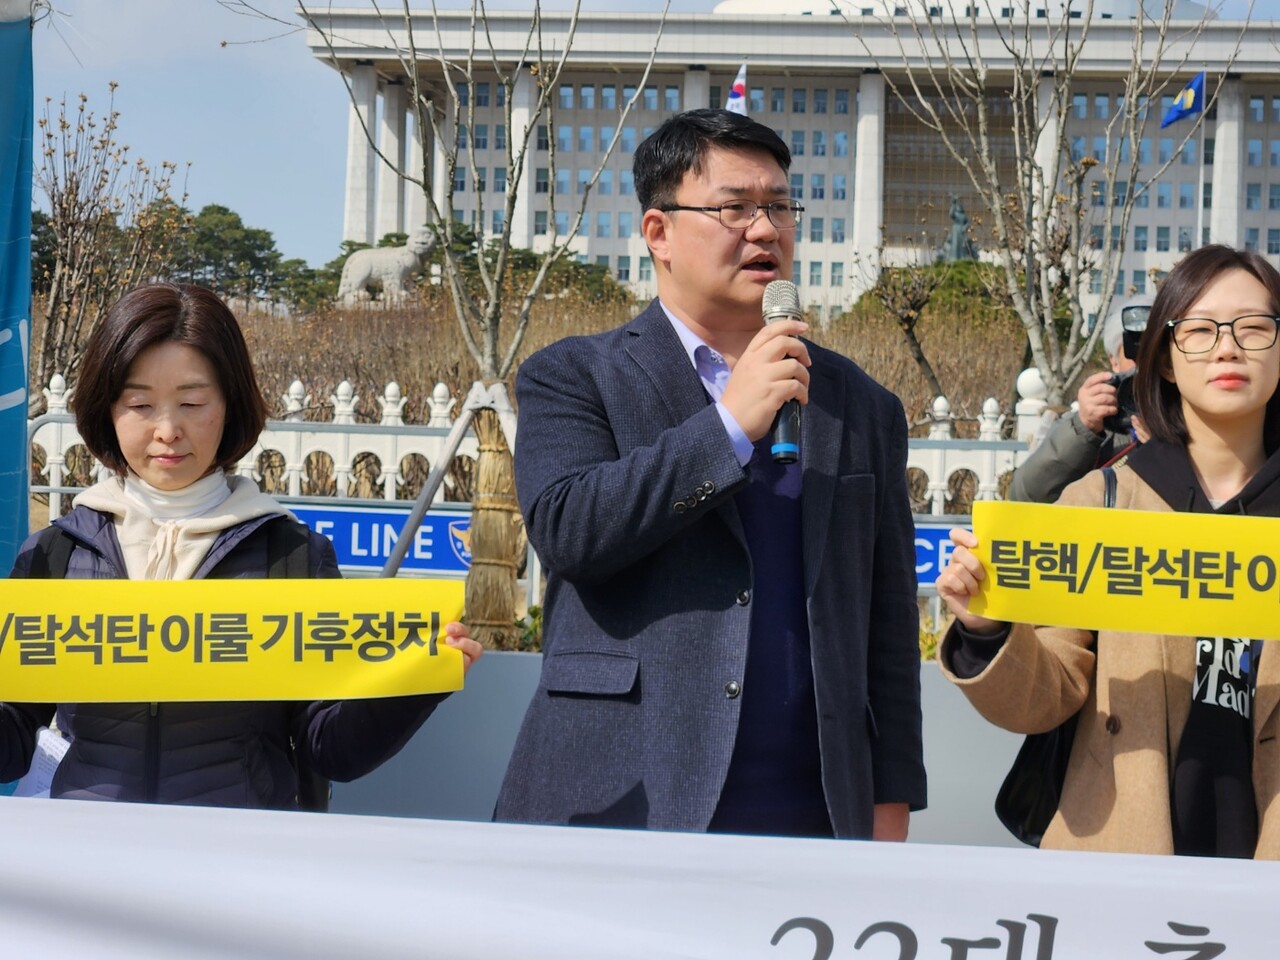 이헌석 기후위기비상행동 기후정치특위 위원이 총선대응계획을 설명하고 있다. 박정은 기자